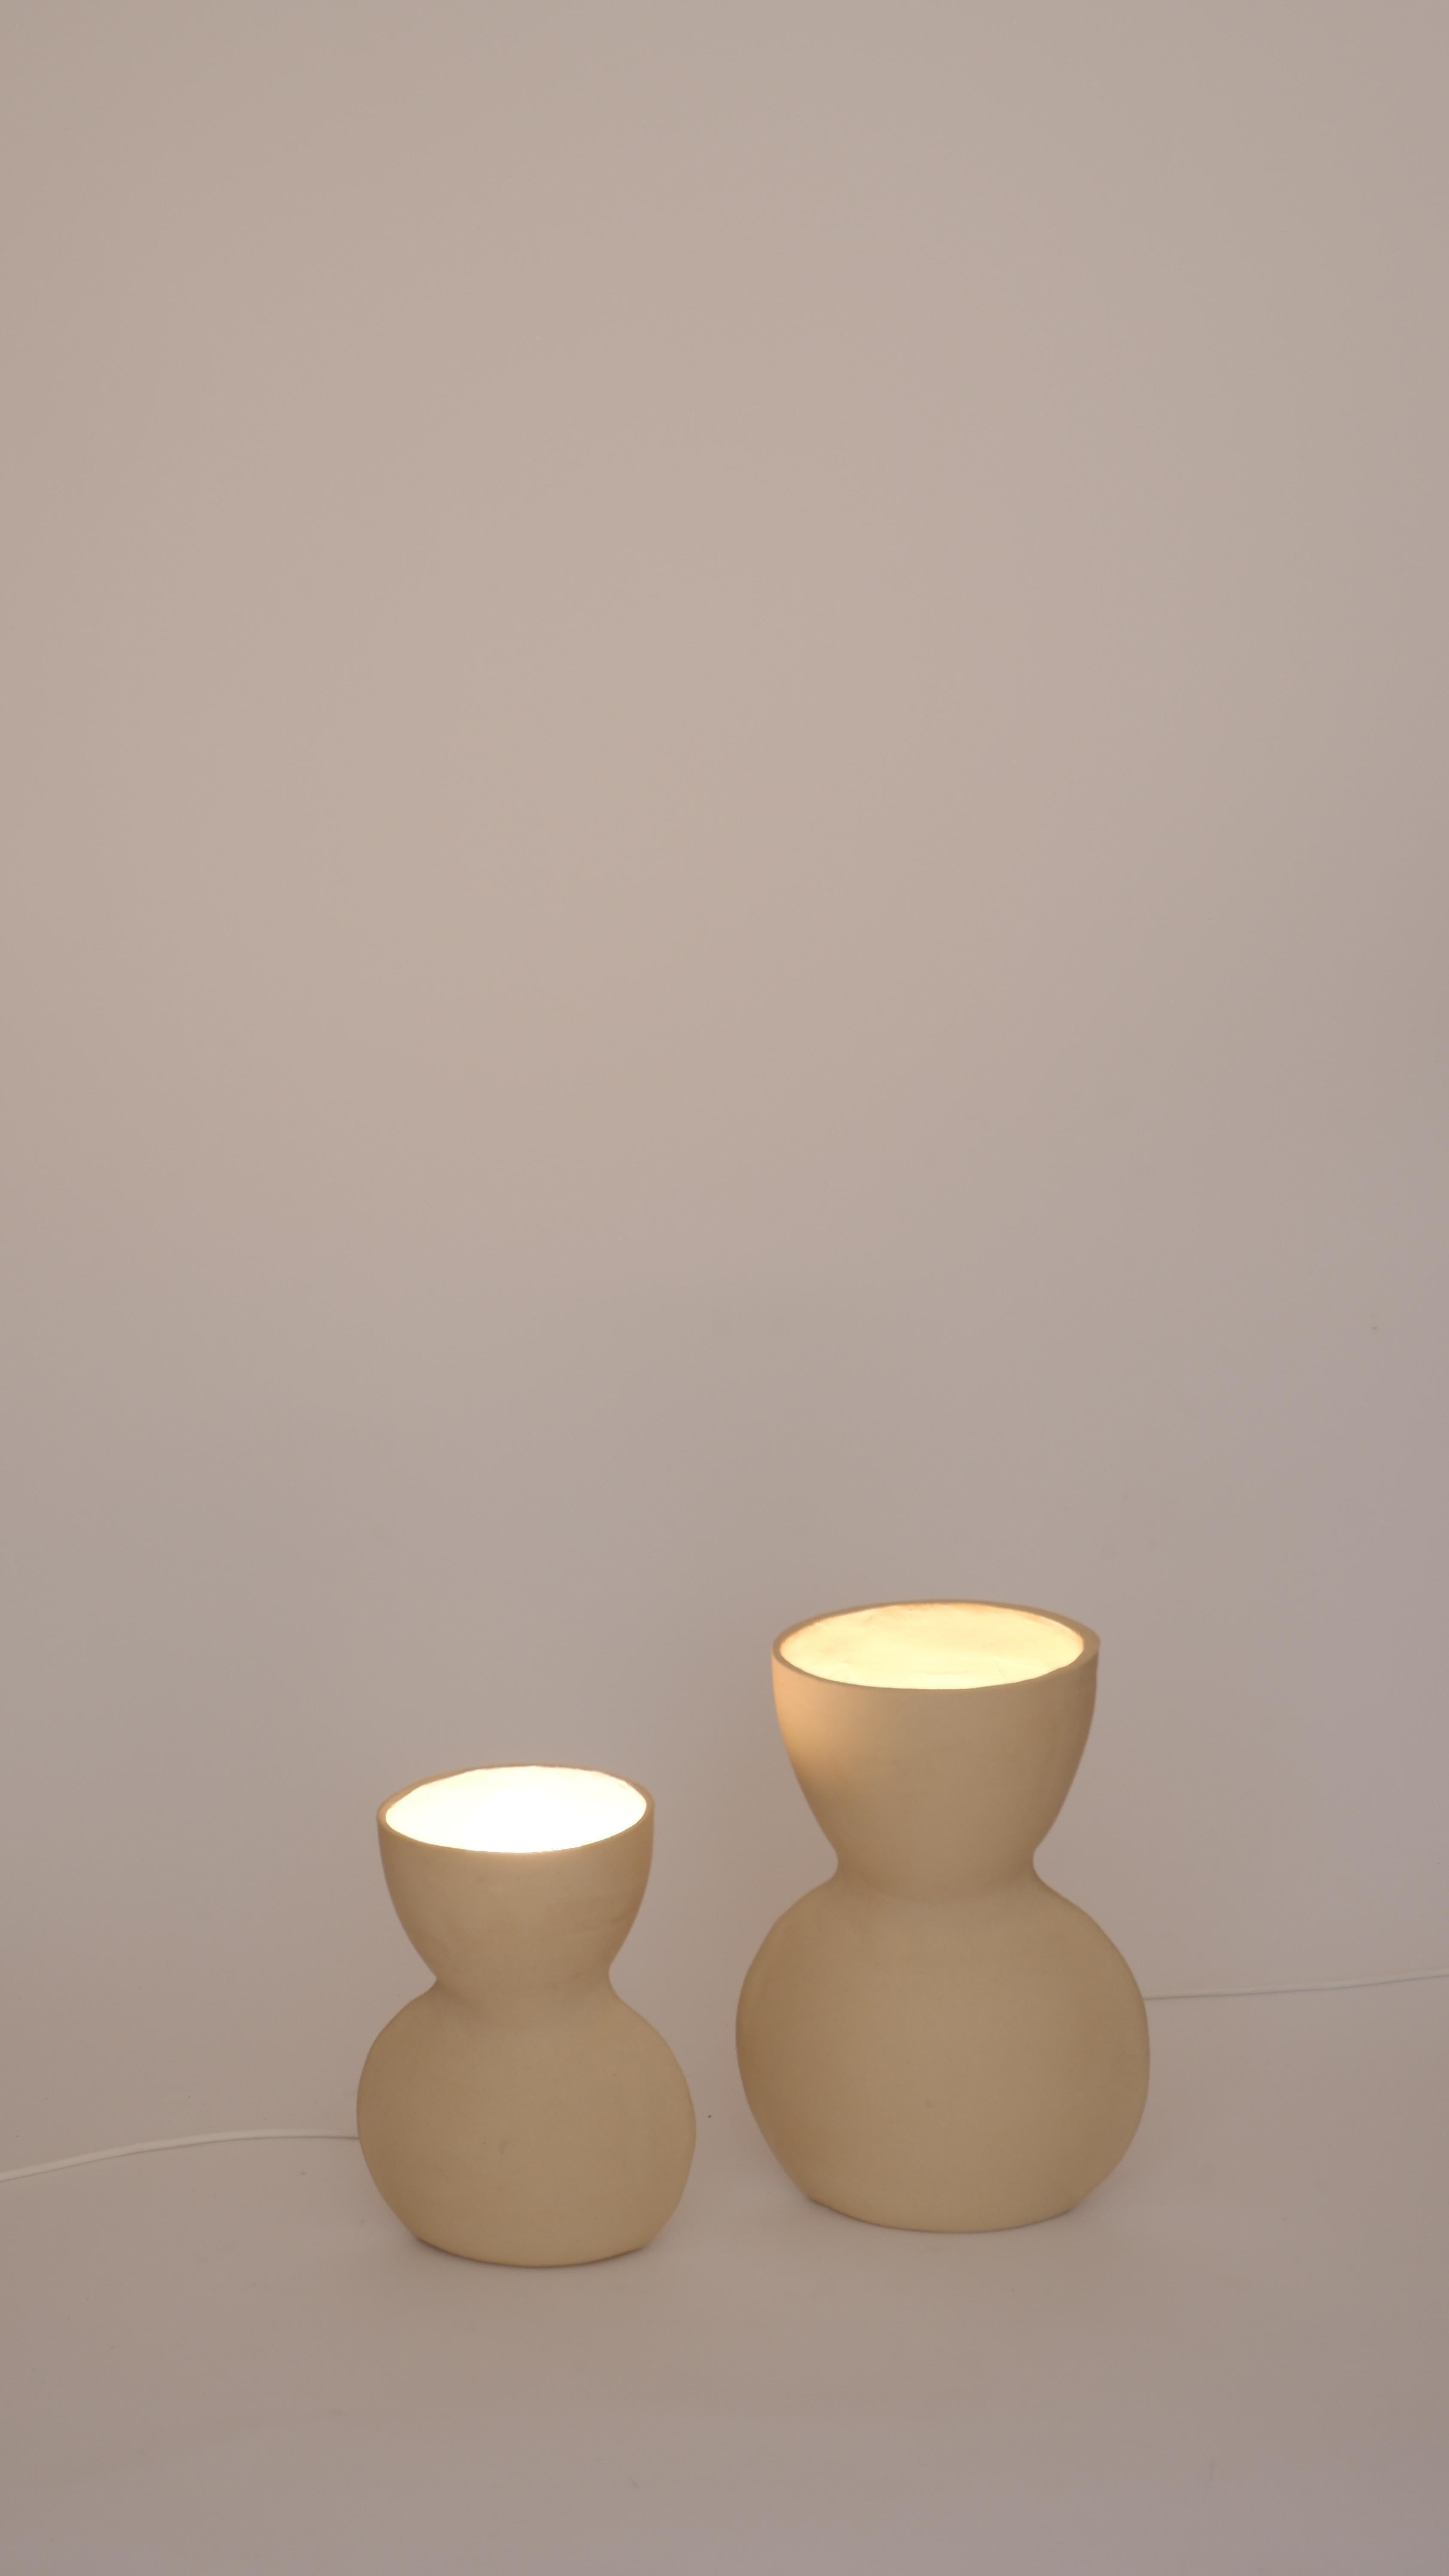 2er-Set weiße Unira-Lampen von Ia Kutateladze
Einzigartig.
Abmessungen: Klein: T 14 x B 18 x H 25 cm.
Bigli: T 17 x B 23 x H 32 cm. 
MATERIALIEN: Lehm.

Jedes Stück ist ein Unikat, da es in freier Handarbeit hergestellt wird. Verschiedene